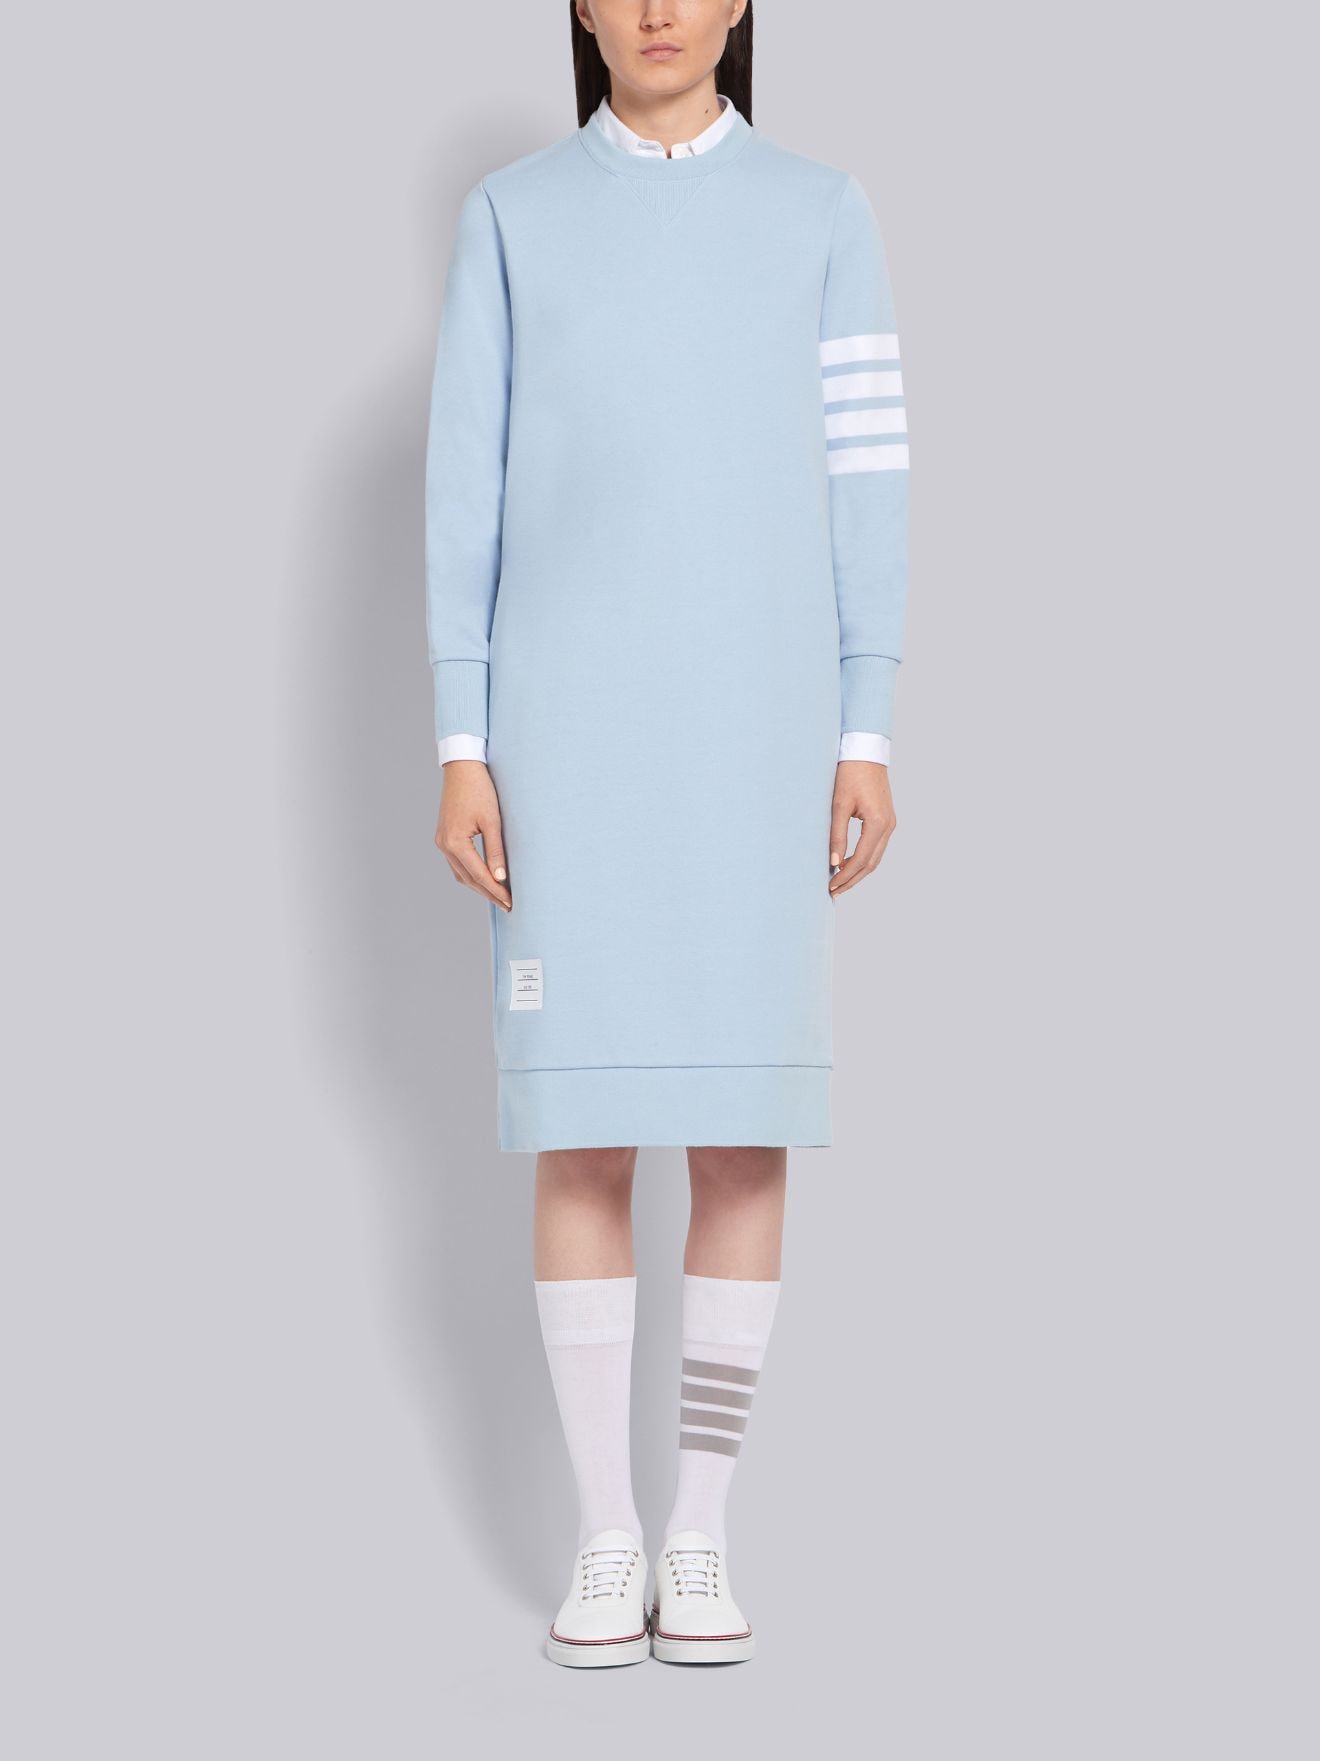 light blue jumper dress